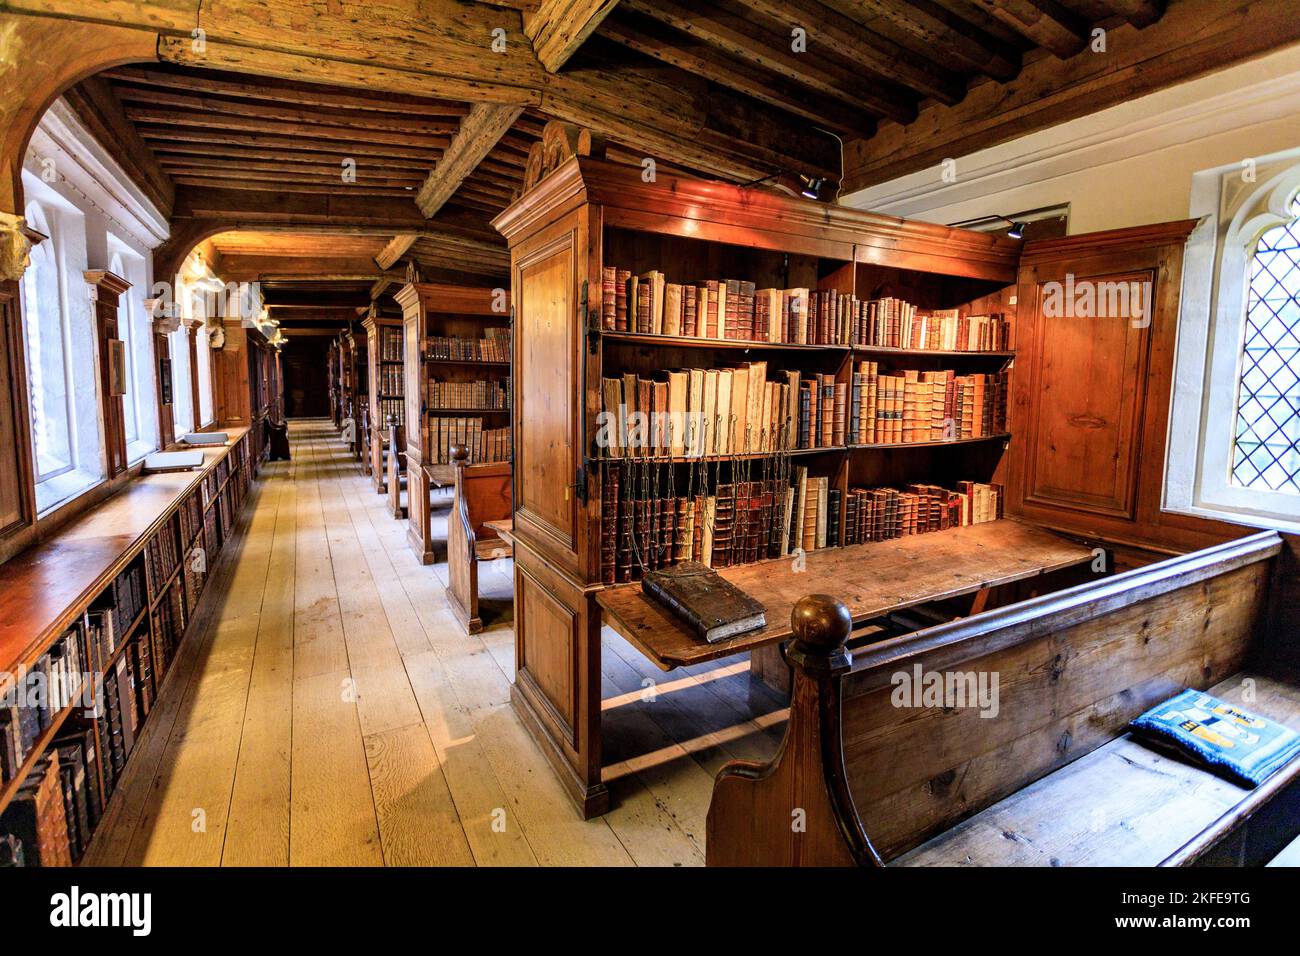 La Chained Library de Wells Cathedral, où des livres précieux et historiques ont été enchaînés aux étagères pour empêcher leur vol, Somerset, Angleterre, Royaume-Uni Banque D'Images